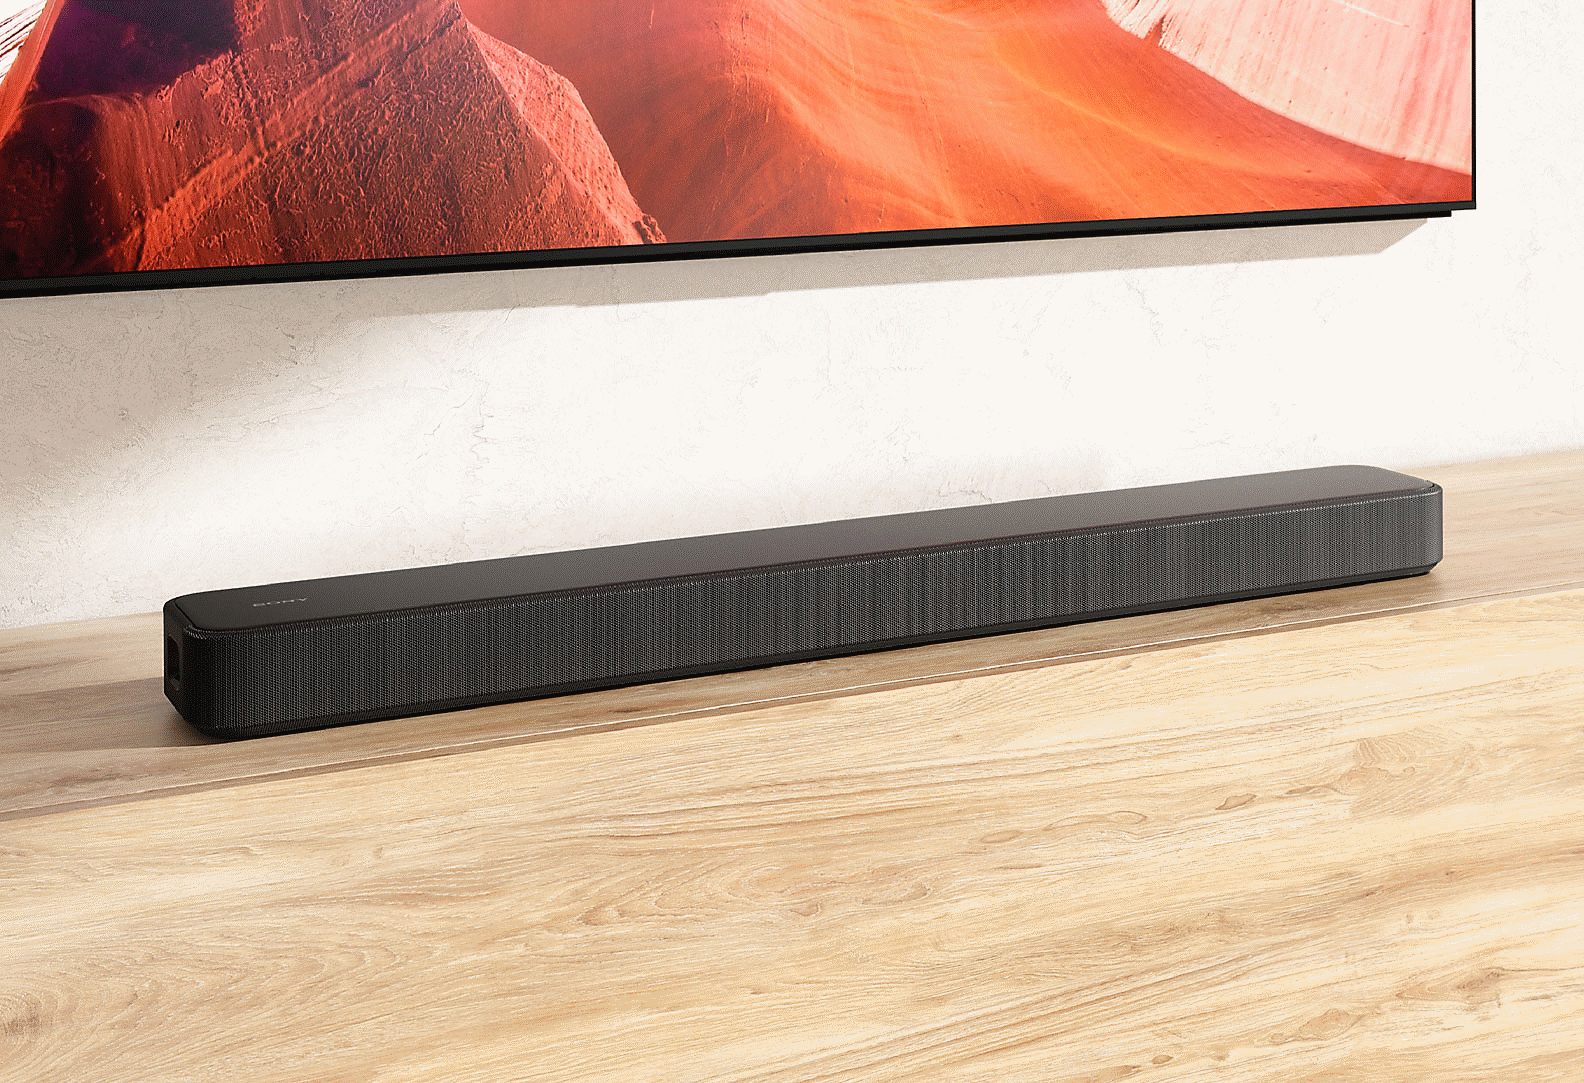 Image de la barre de son HT-S2000 sur un meuble de téléviseur en bois